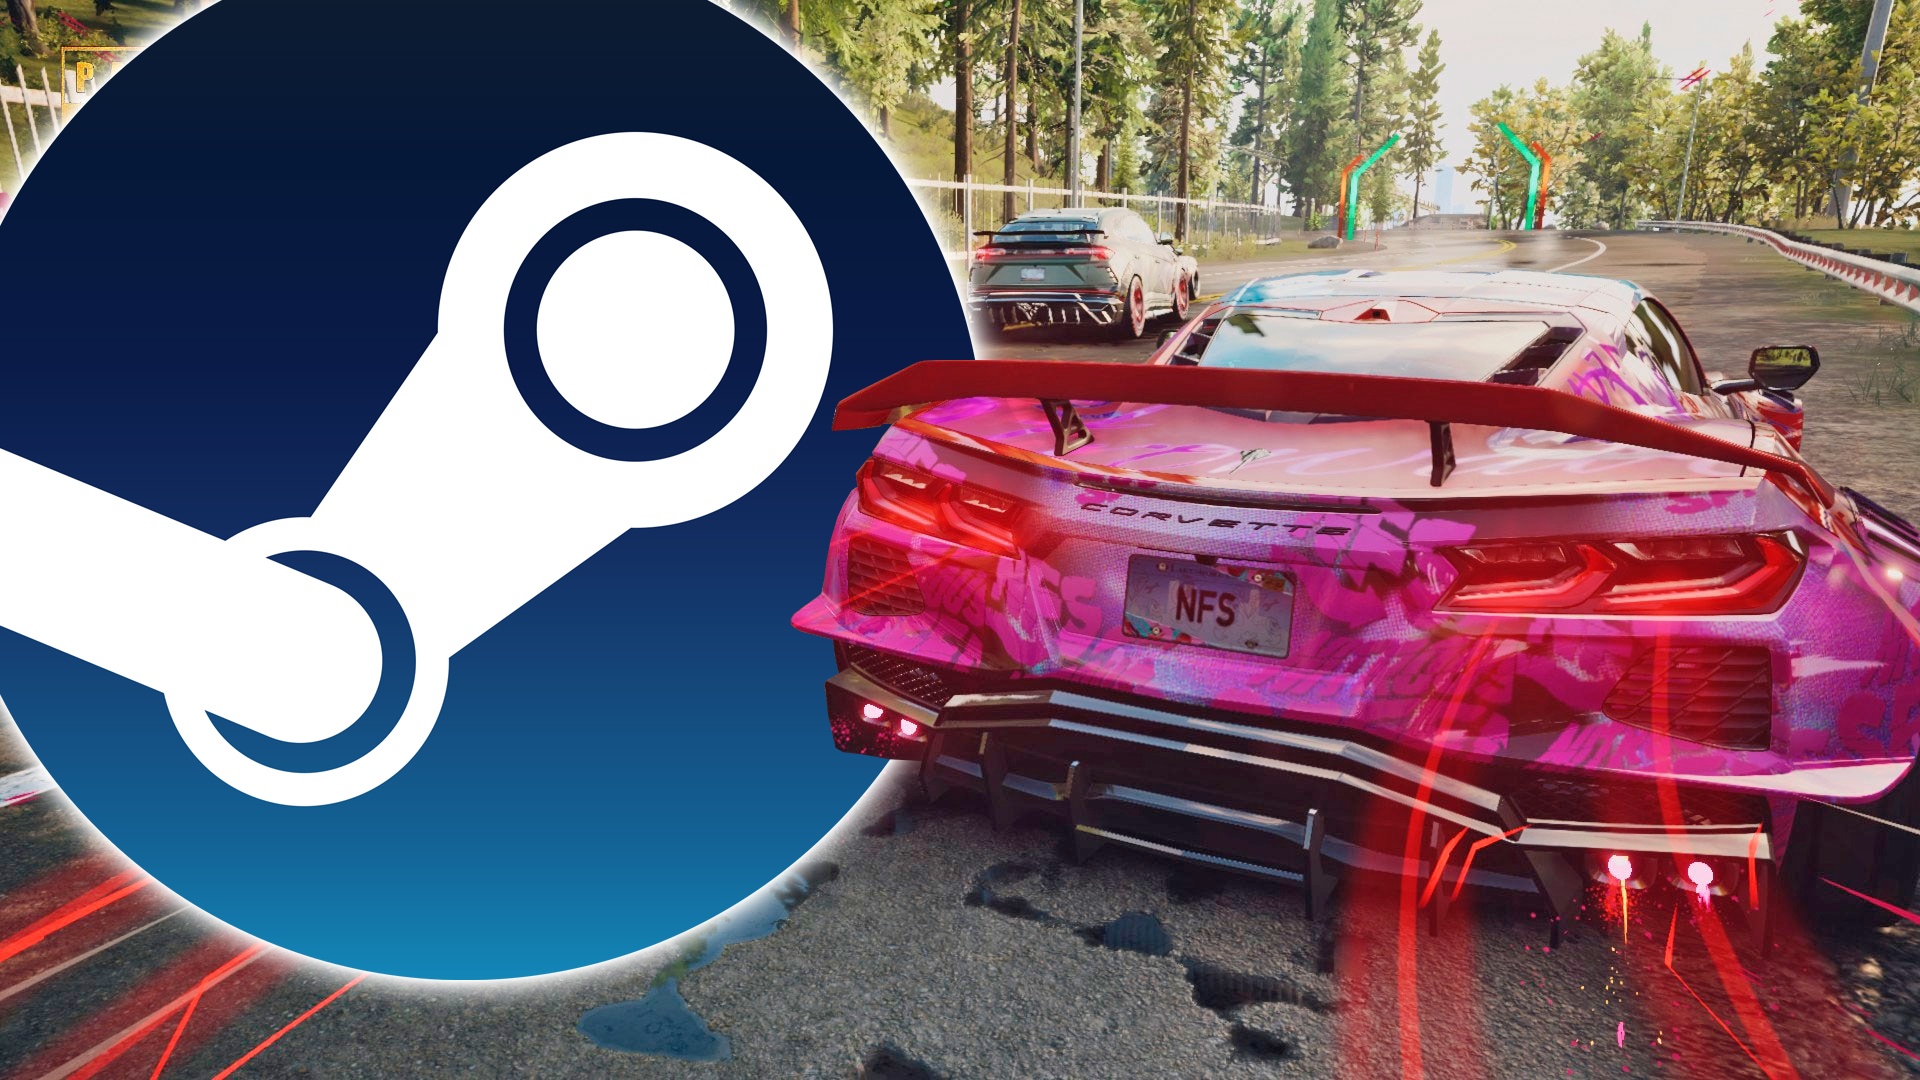 Dicker Steam-Rabatt: Das neueste Need for Speed hat nur noch kurz einen fairen Preis